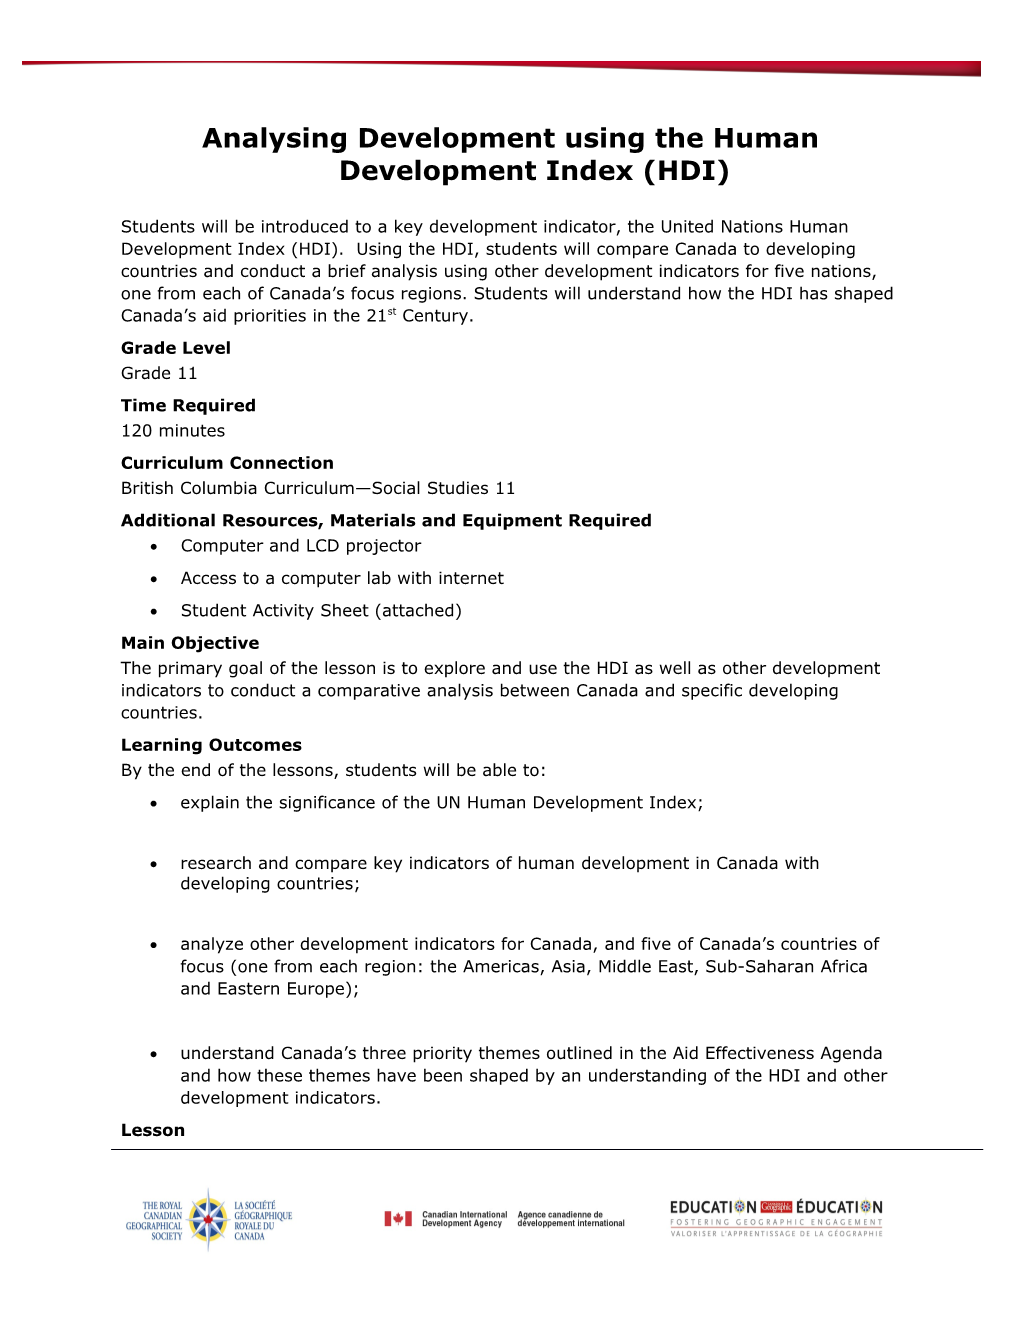 Analysing Development Using the Human Development Index (HDI)